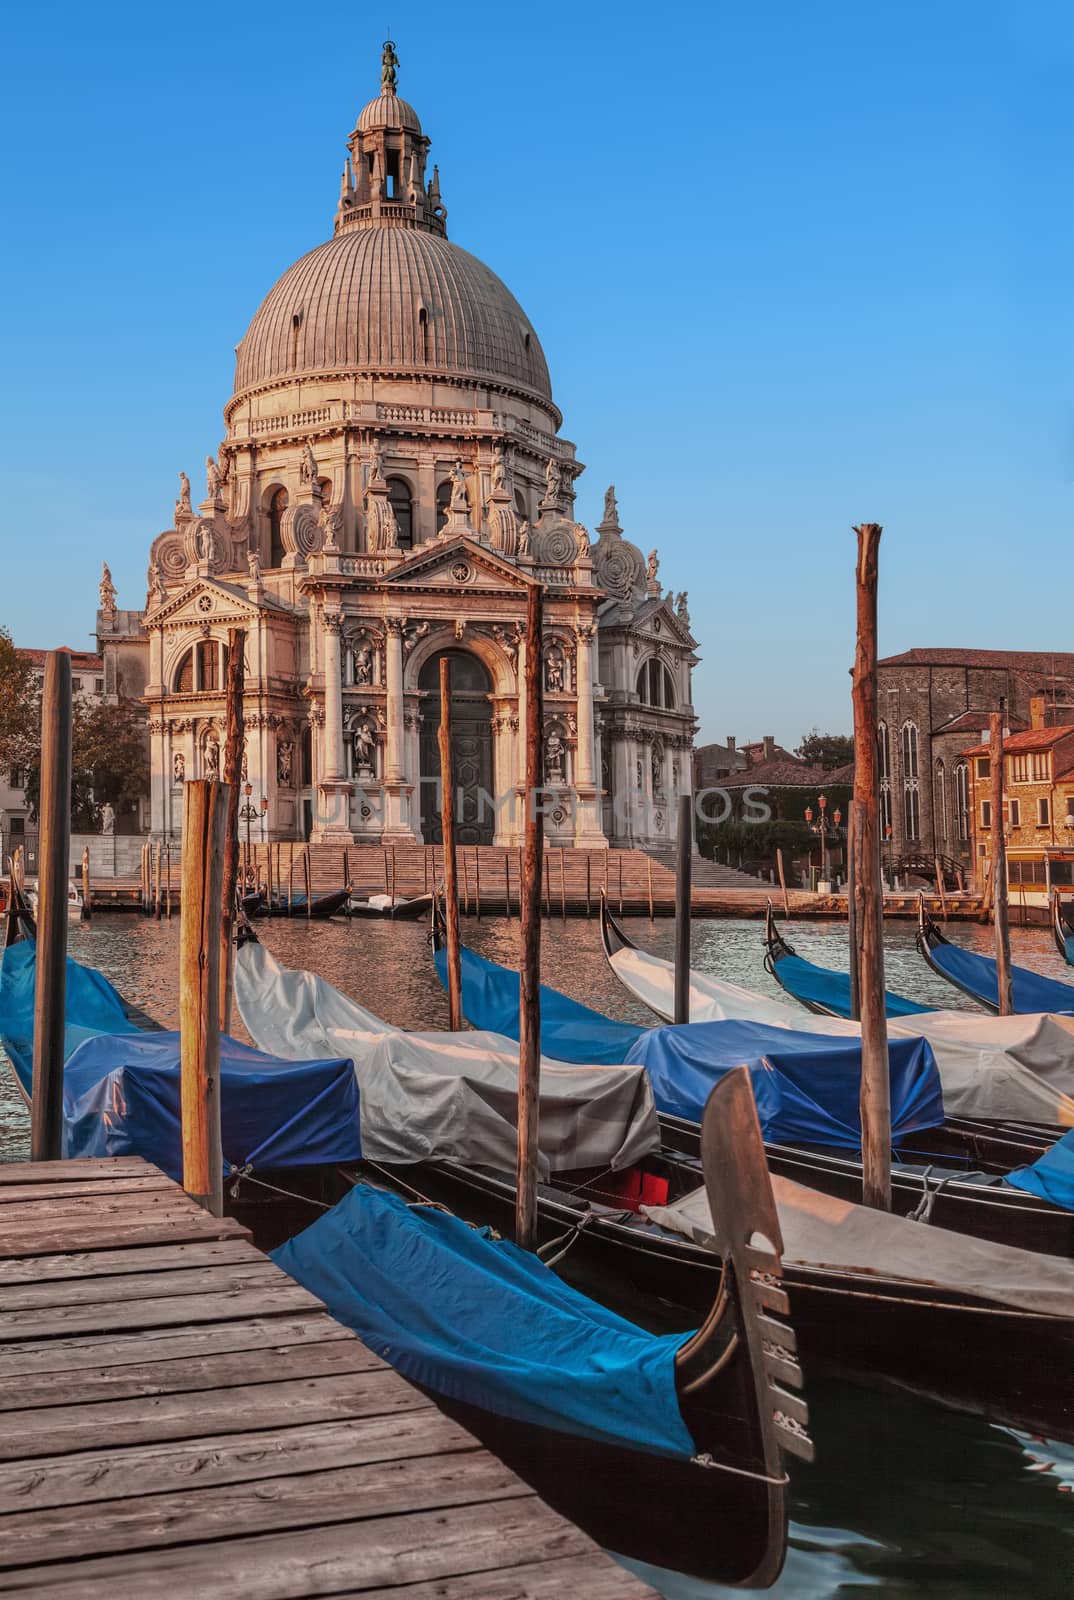 Basilica Santa Maria Della Salute from the Grand Canal in Venice, Italy